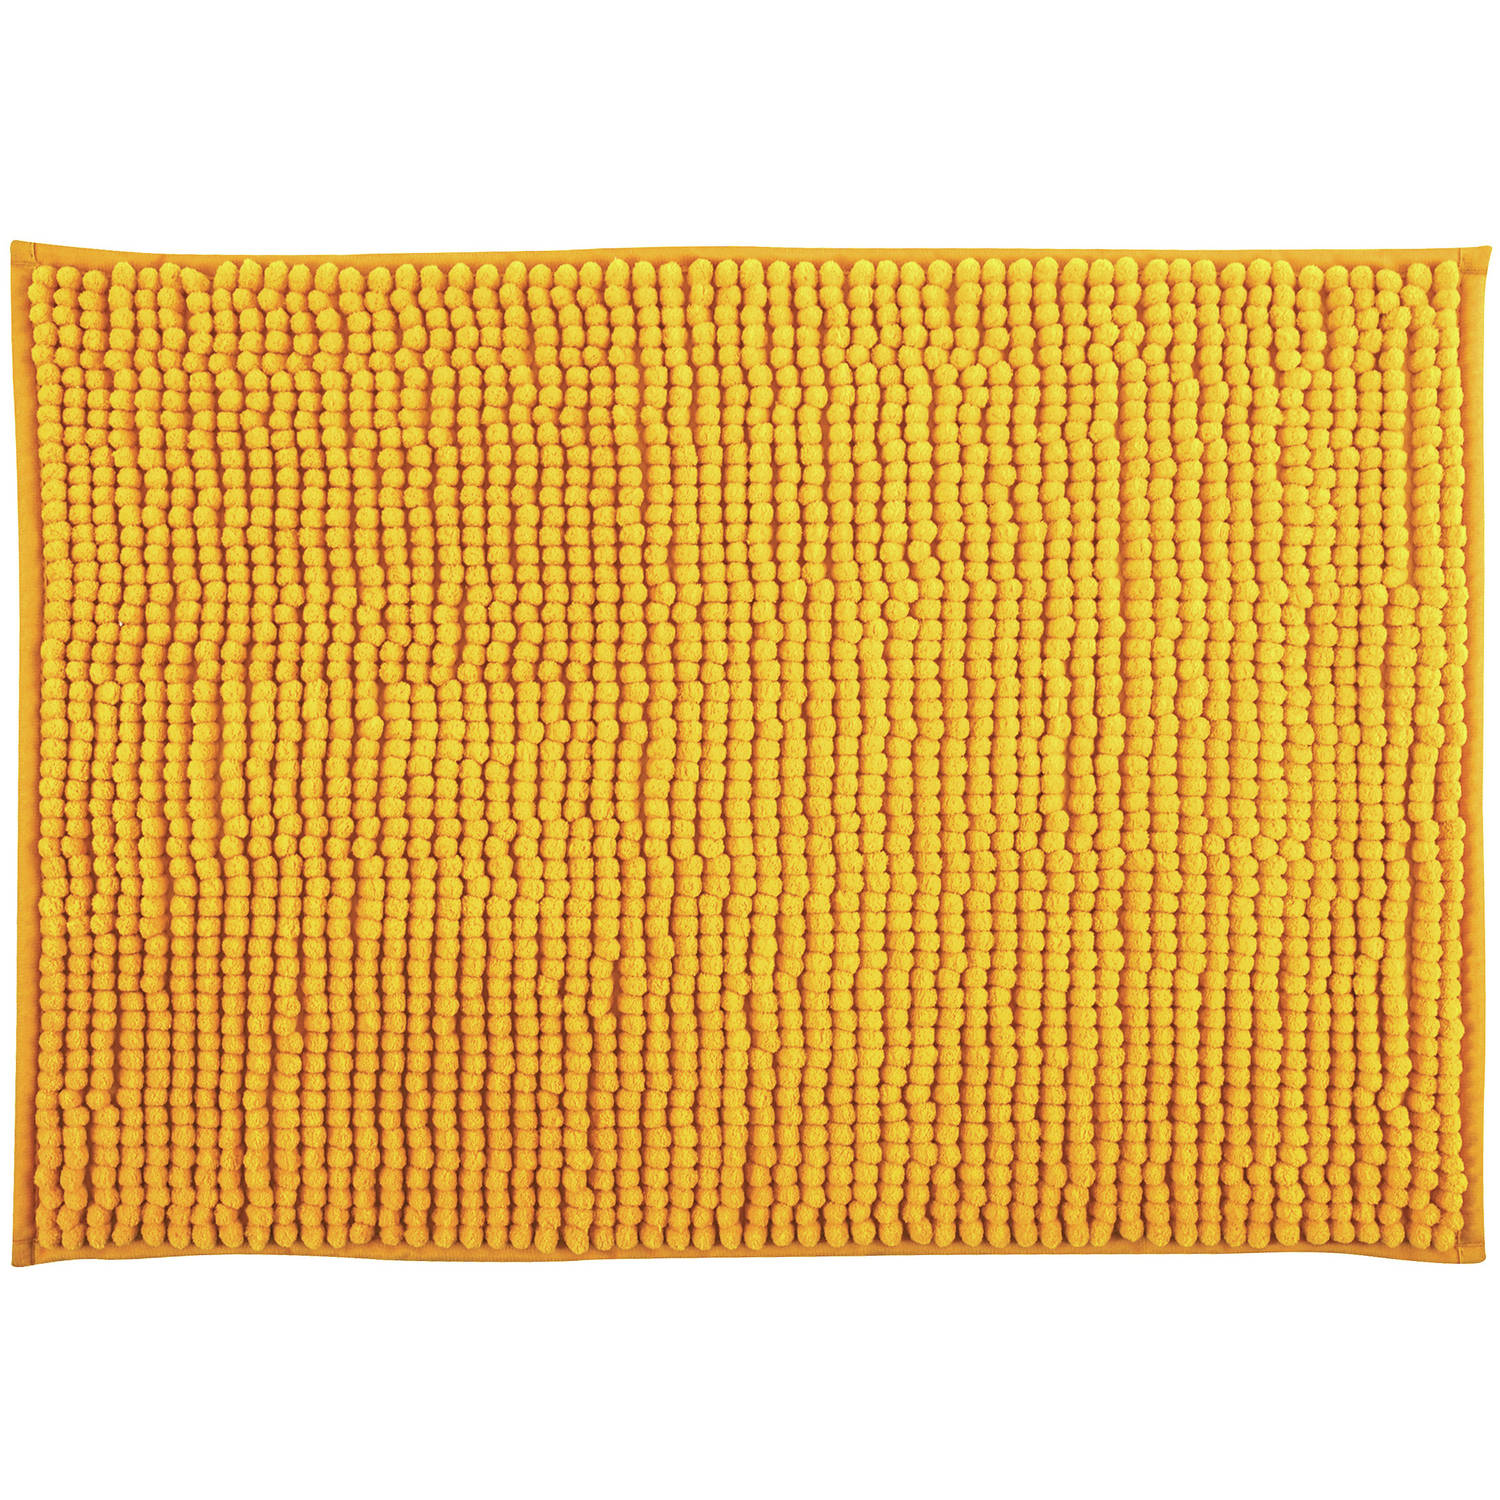 MSV Badkamerkleed-badmat kleedje voor op de vloer saffraan geel 60 x 90 cm Microvezel Badmatjes